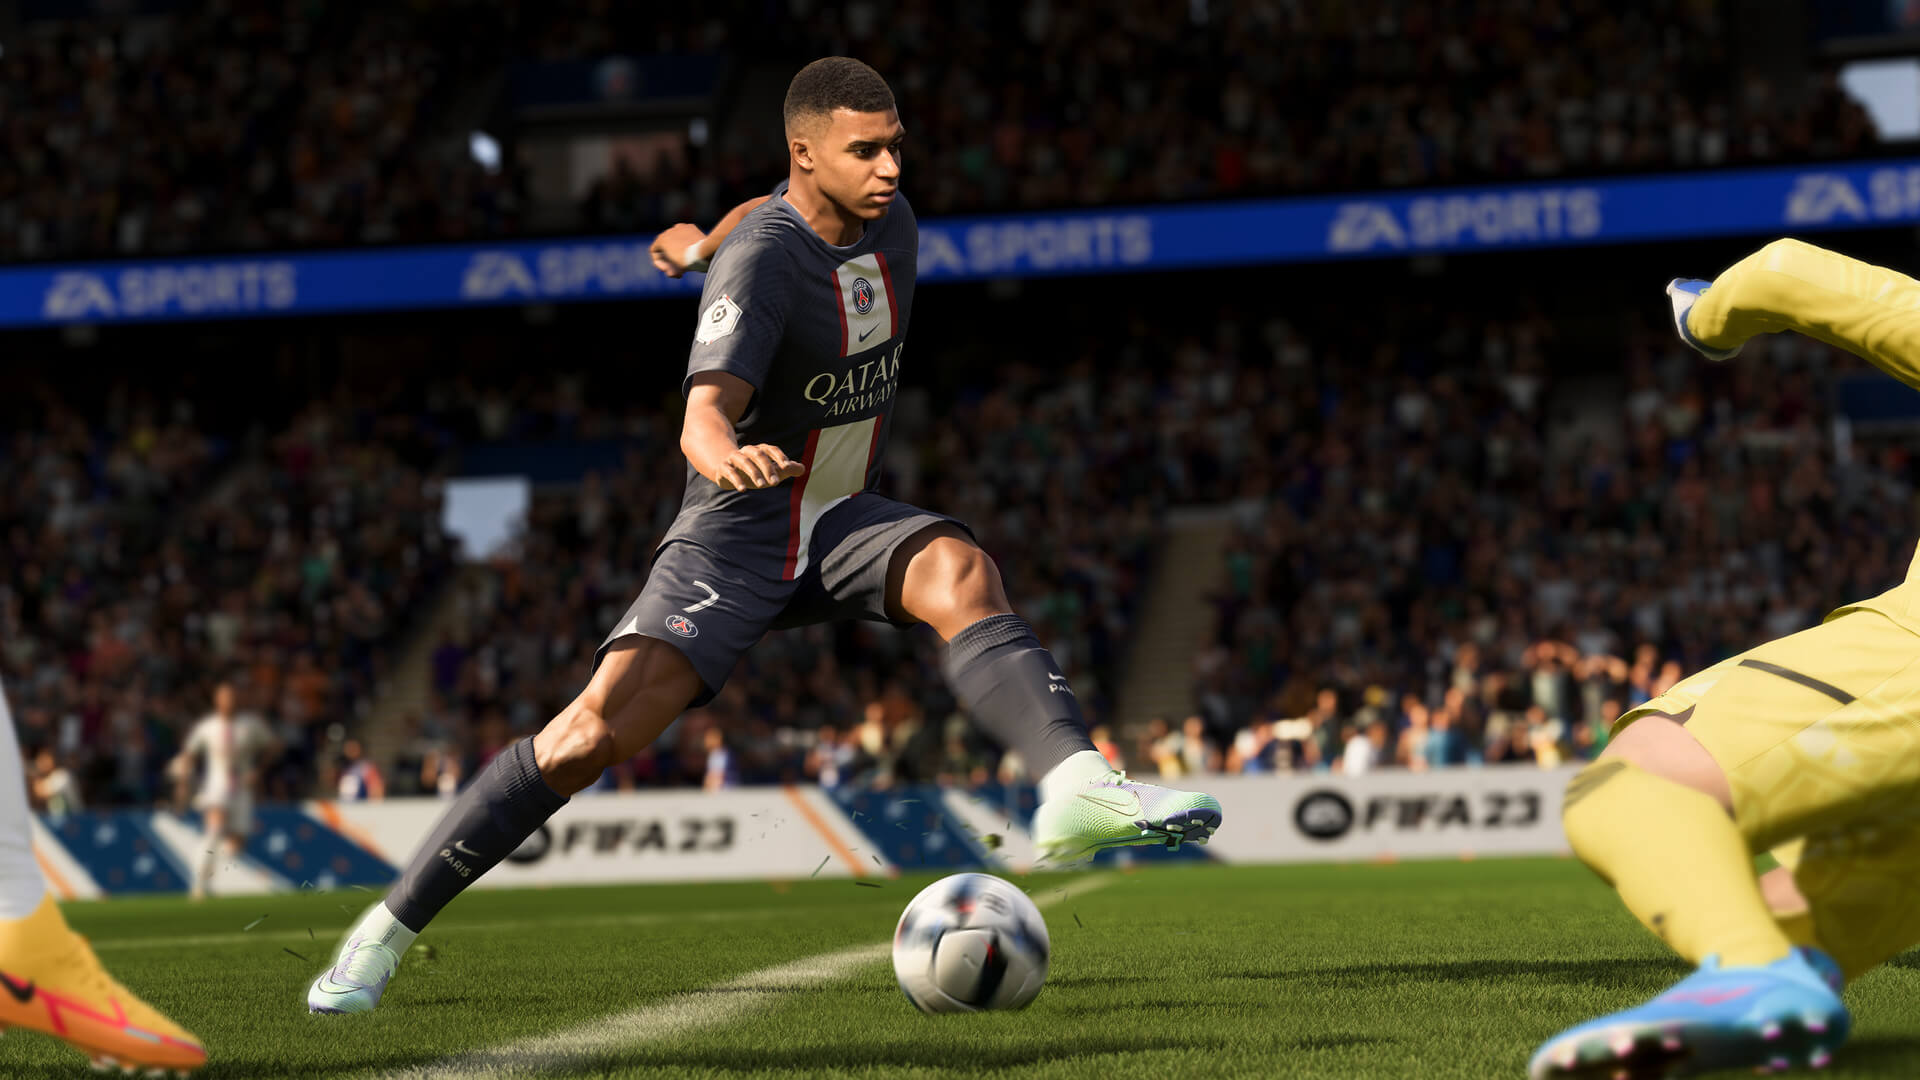 Requisitos Mínimos e Recomendados para FIFA 19 no PC 